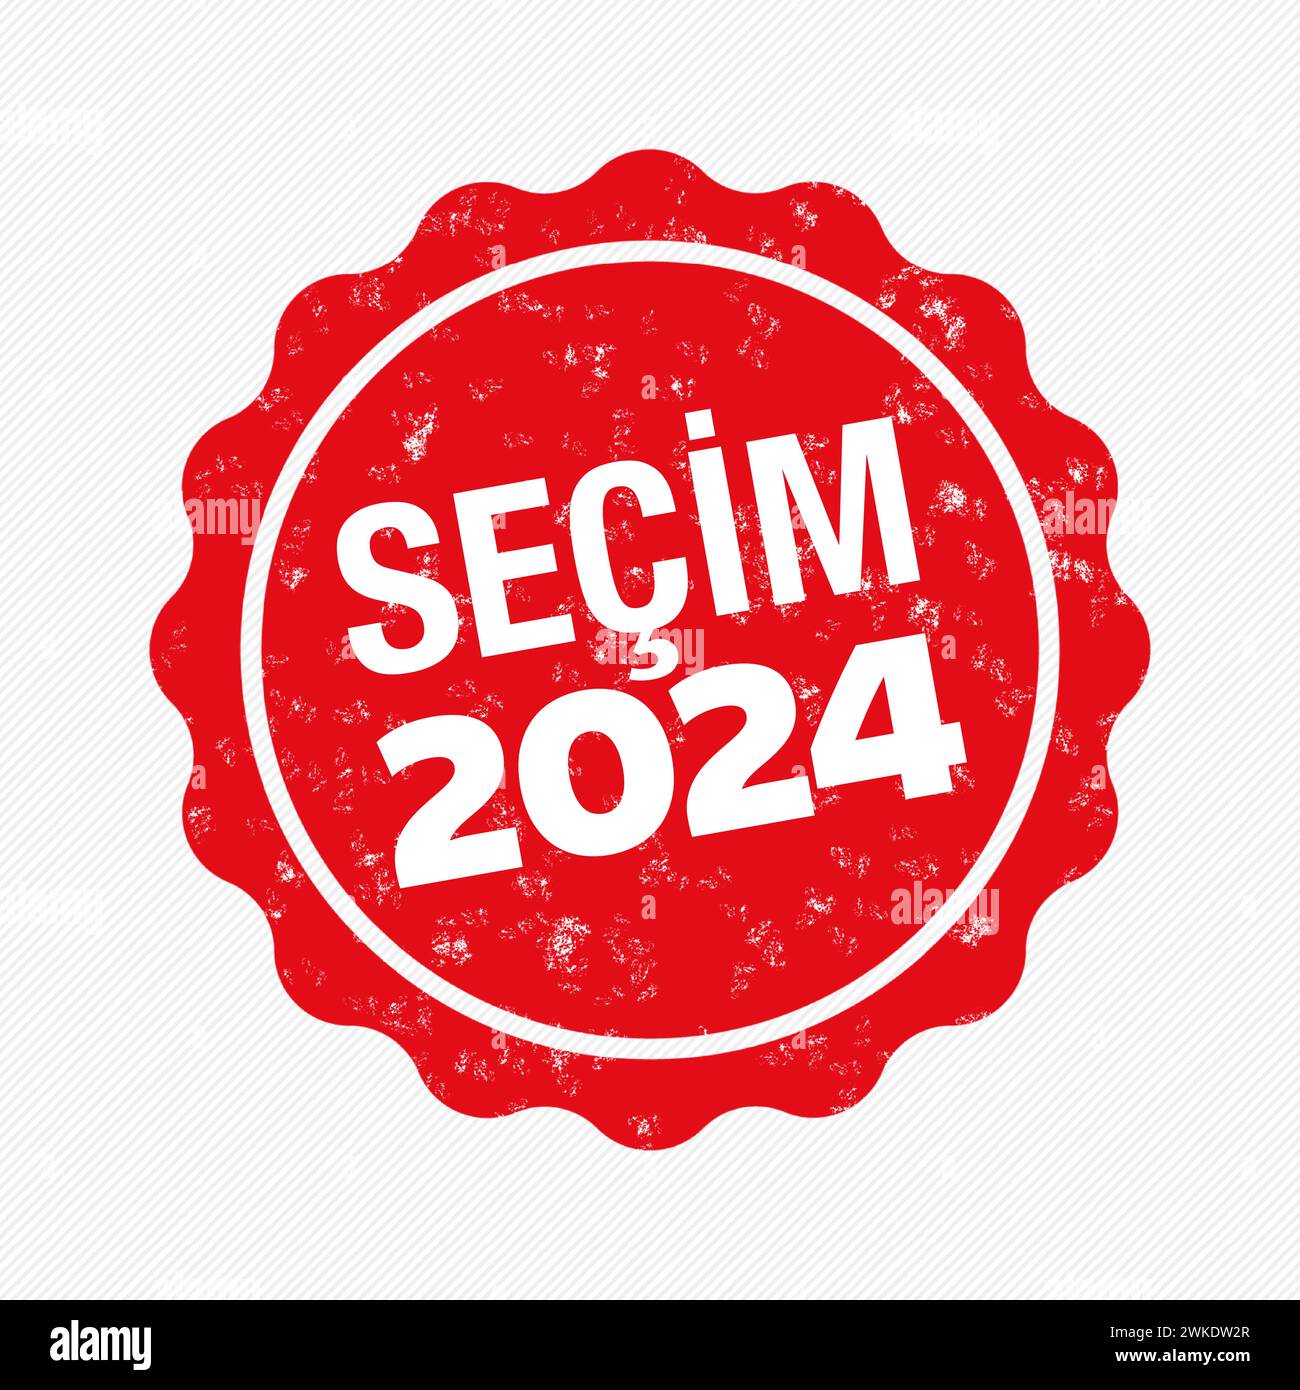 Turkish local election campaign: Türkiye Yerel seçimi kampanyası in Turkish language. Municipal Elections, Turkiye 2024 Stock Vector